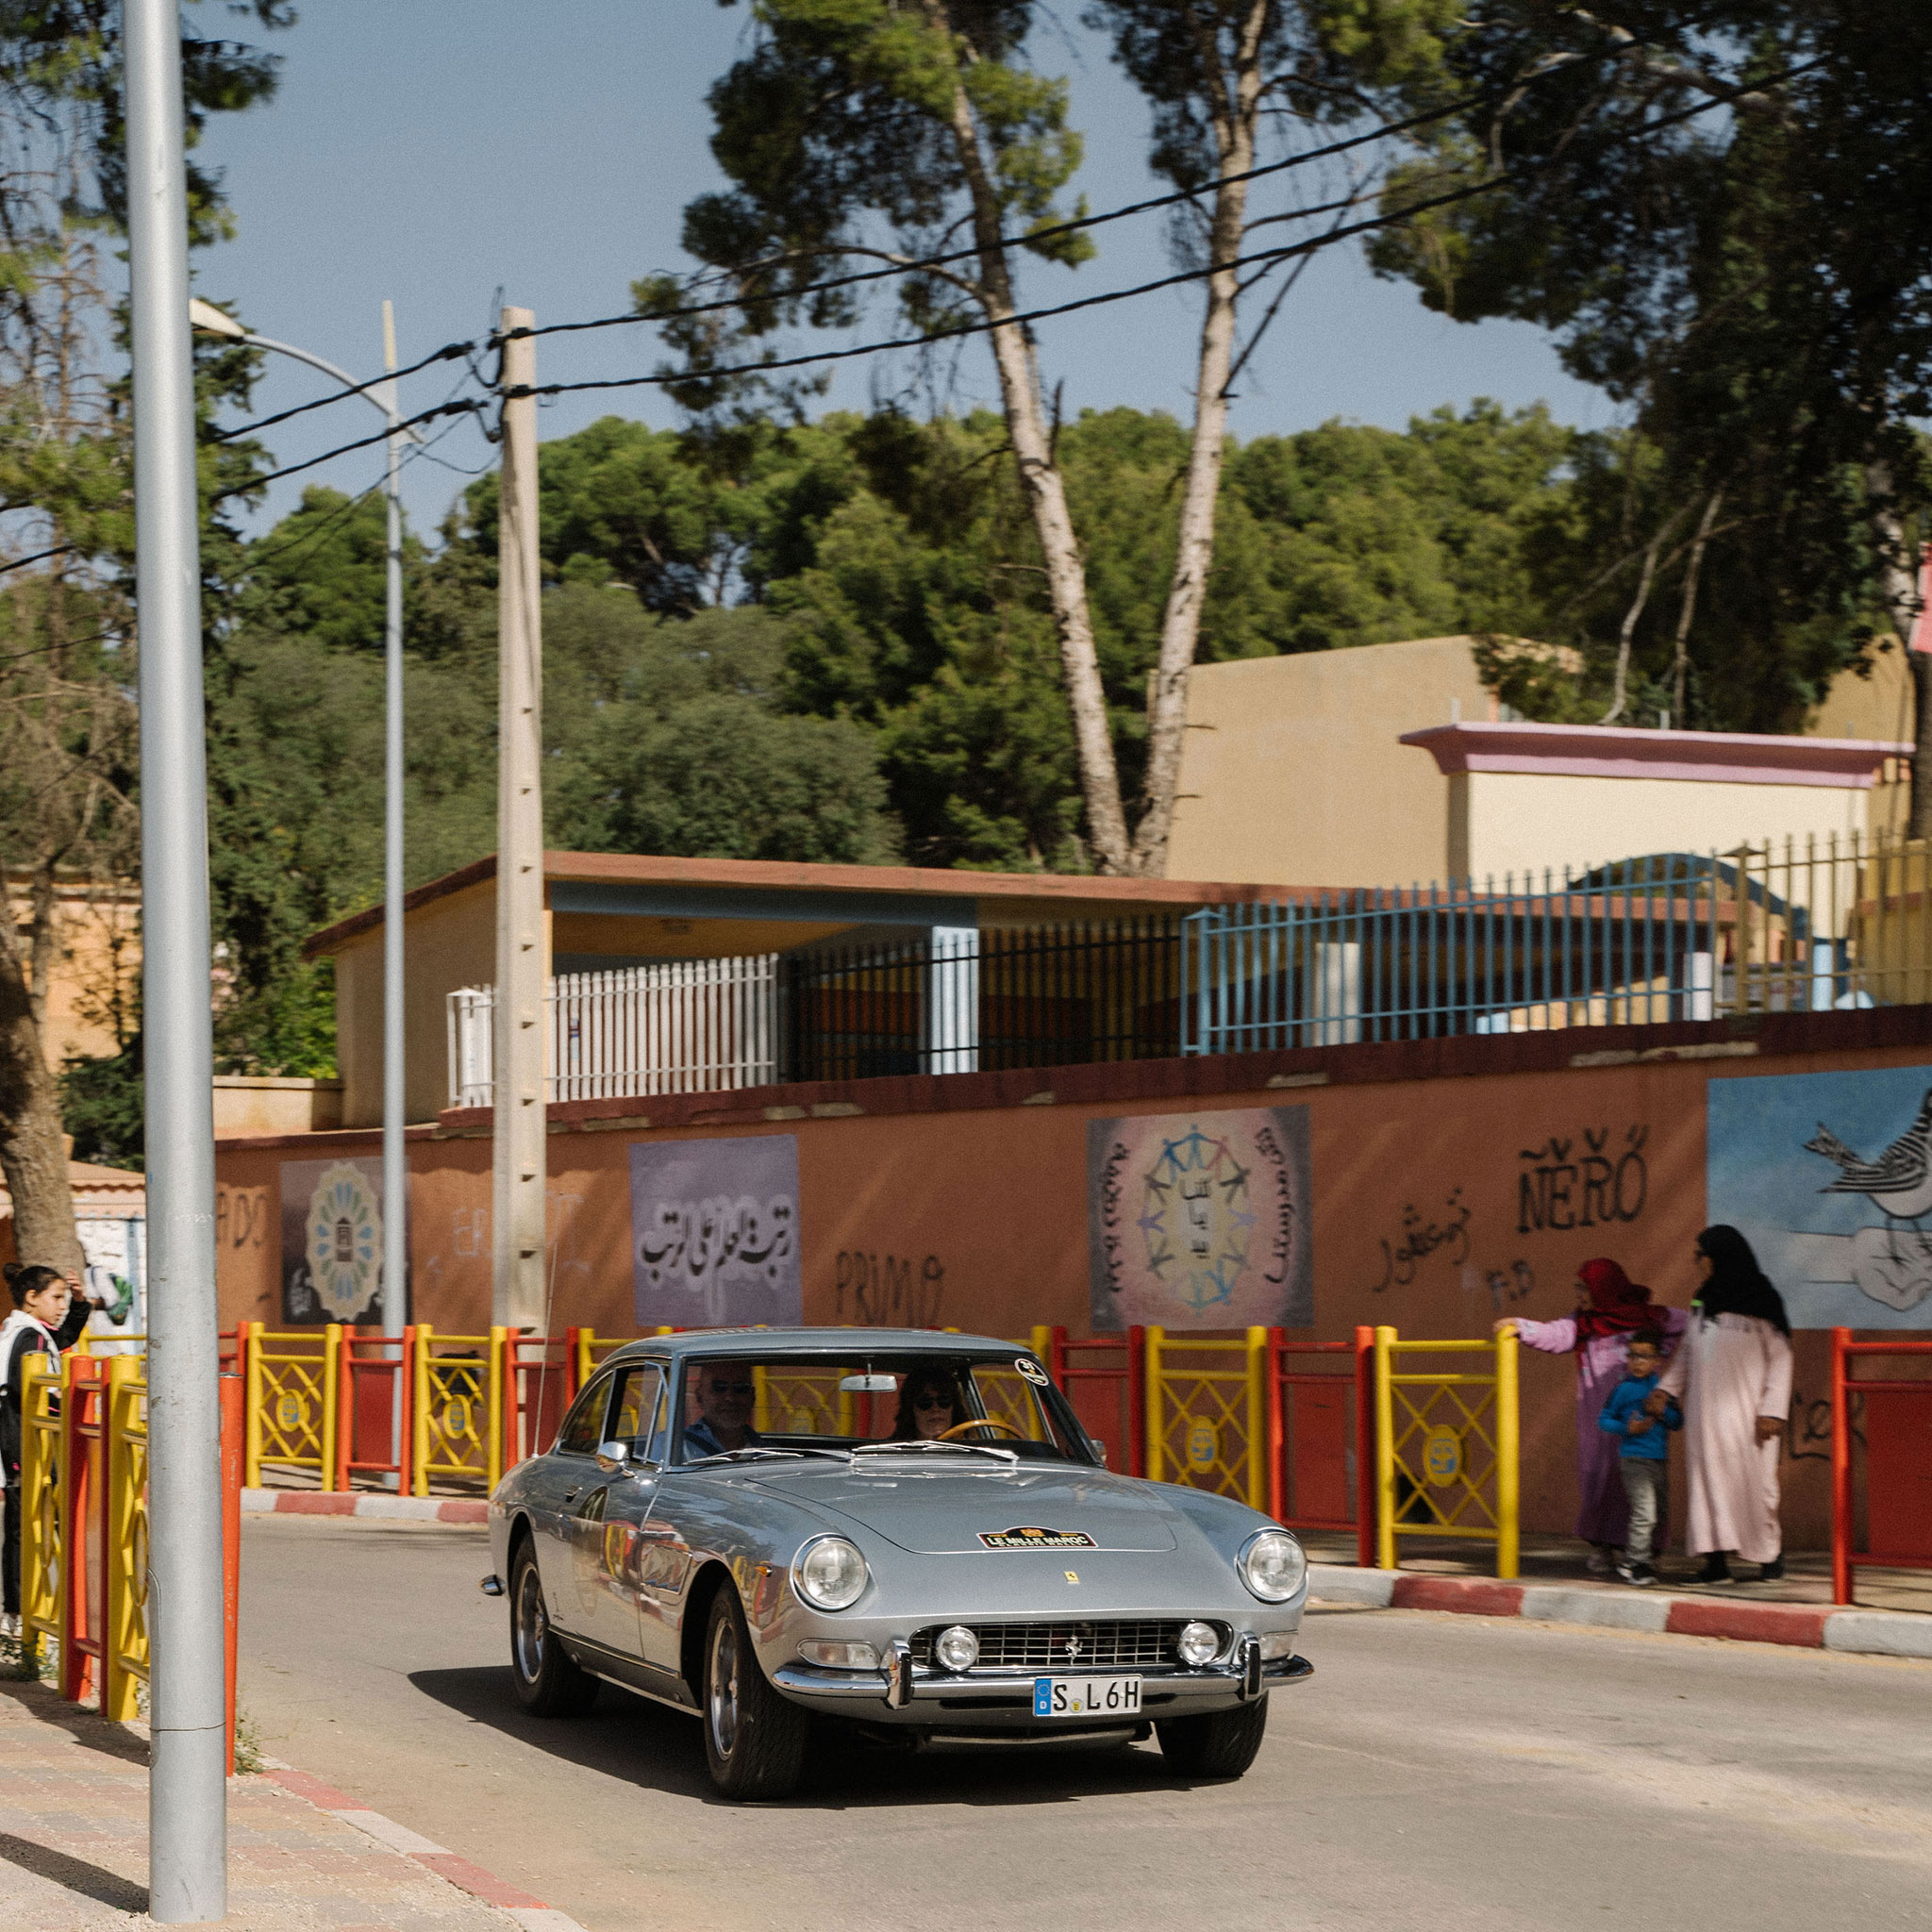 Le circuit propose de découvrir les quartiers des villes traversées – Mille Maroc Classic Rallye 2023.